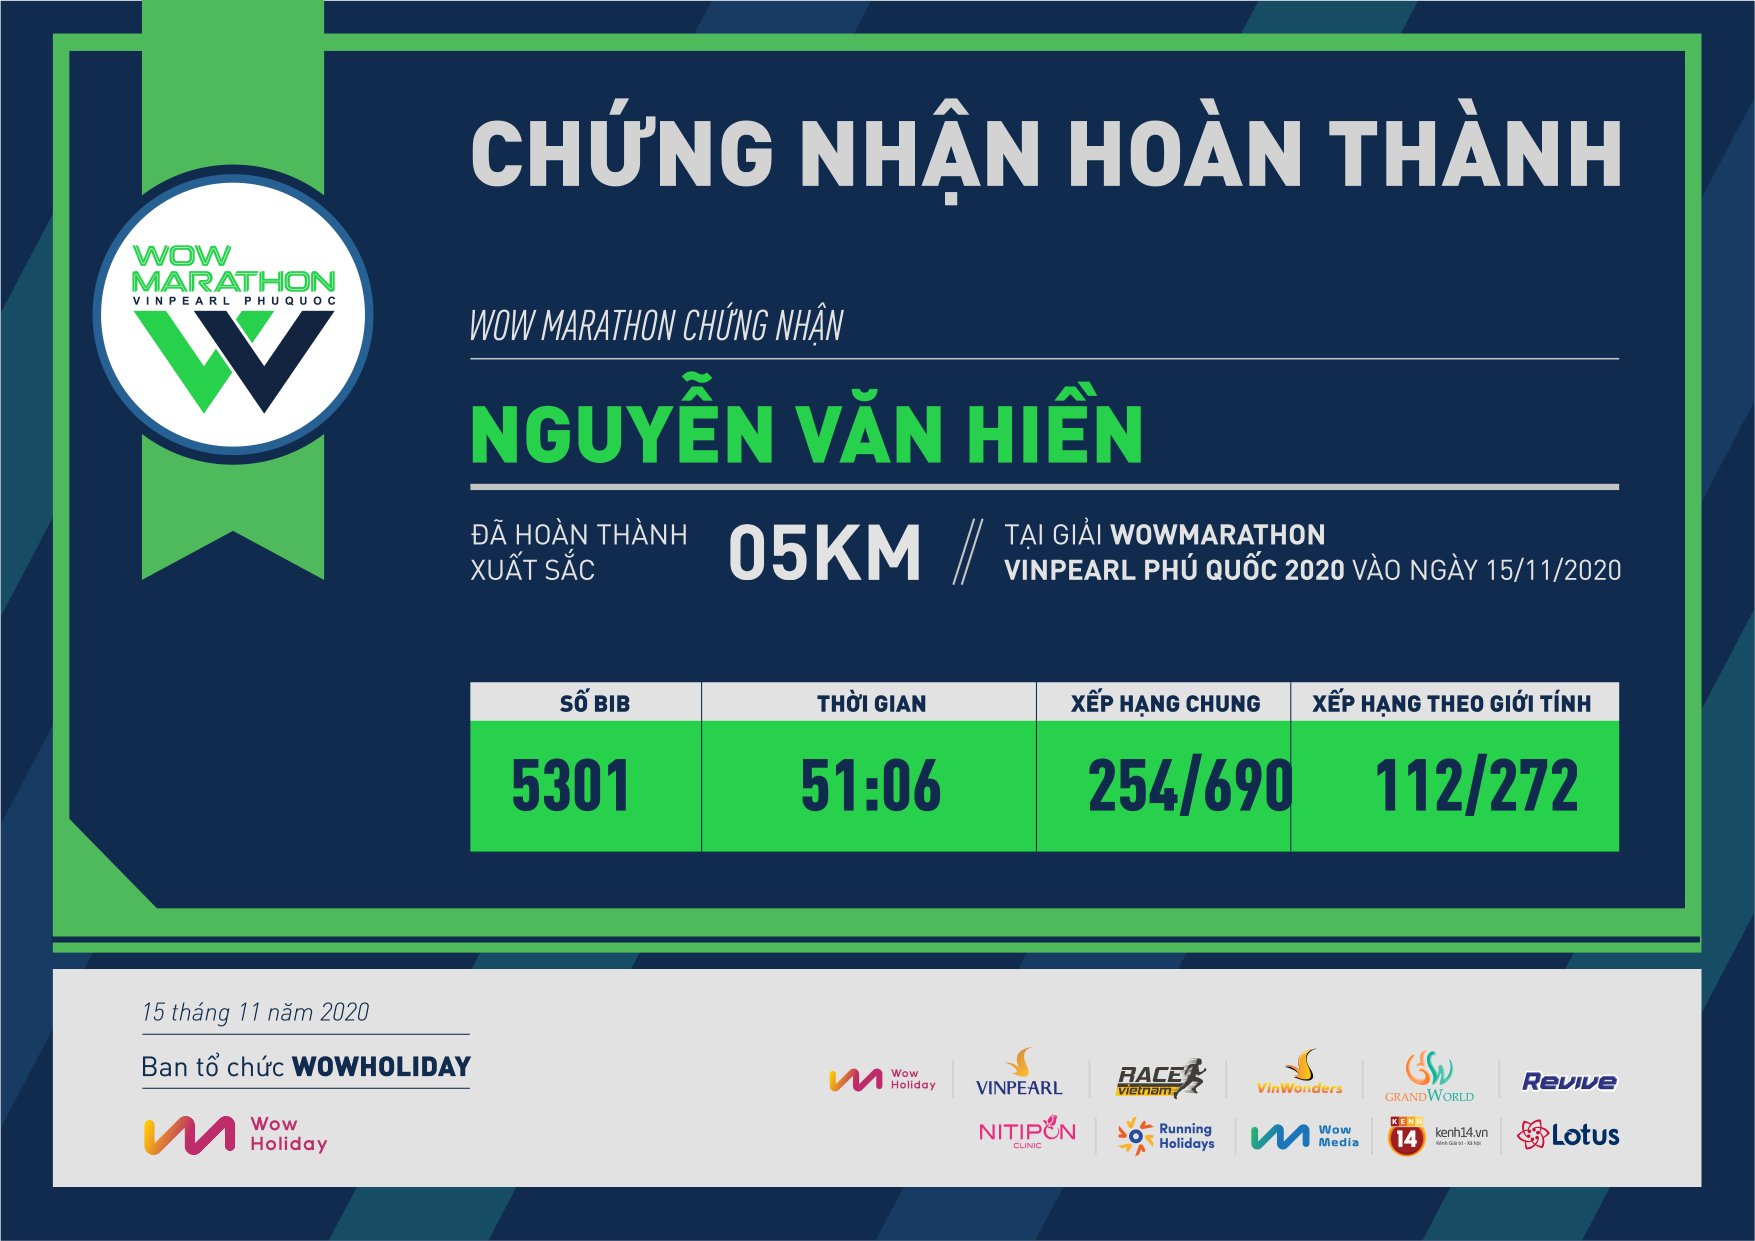 5301 - Nguyễn Văn Hiền